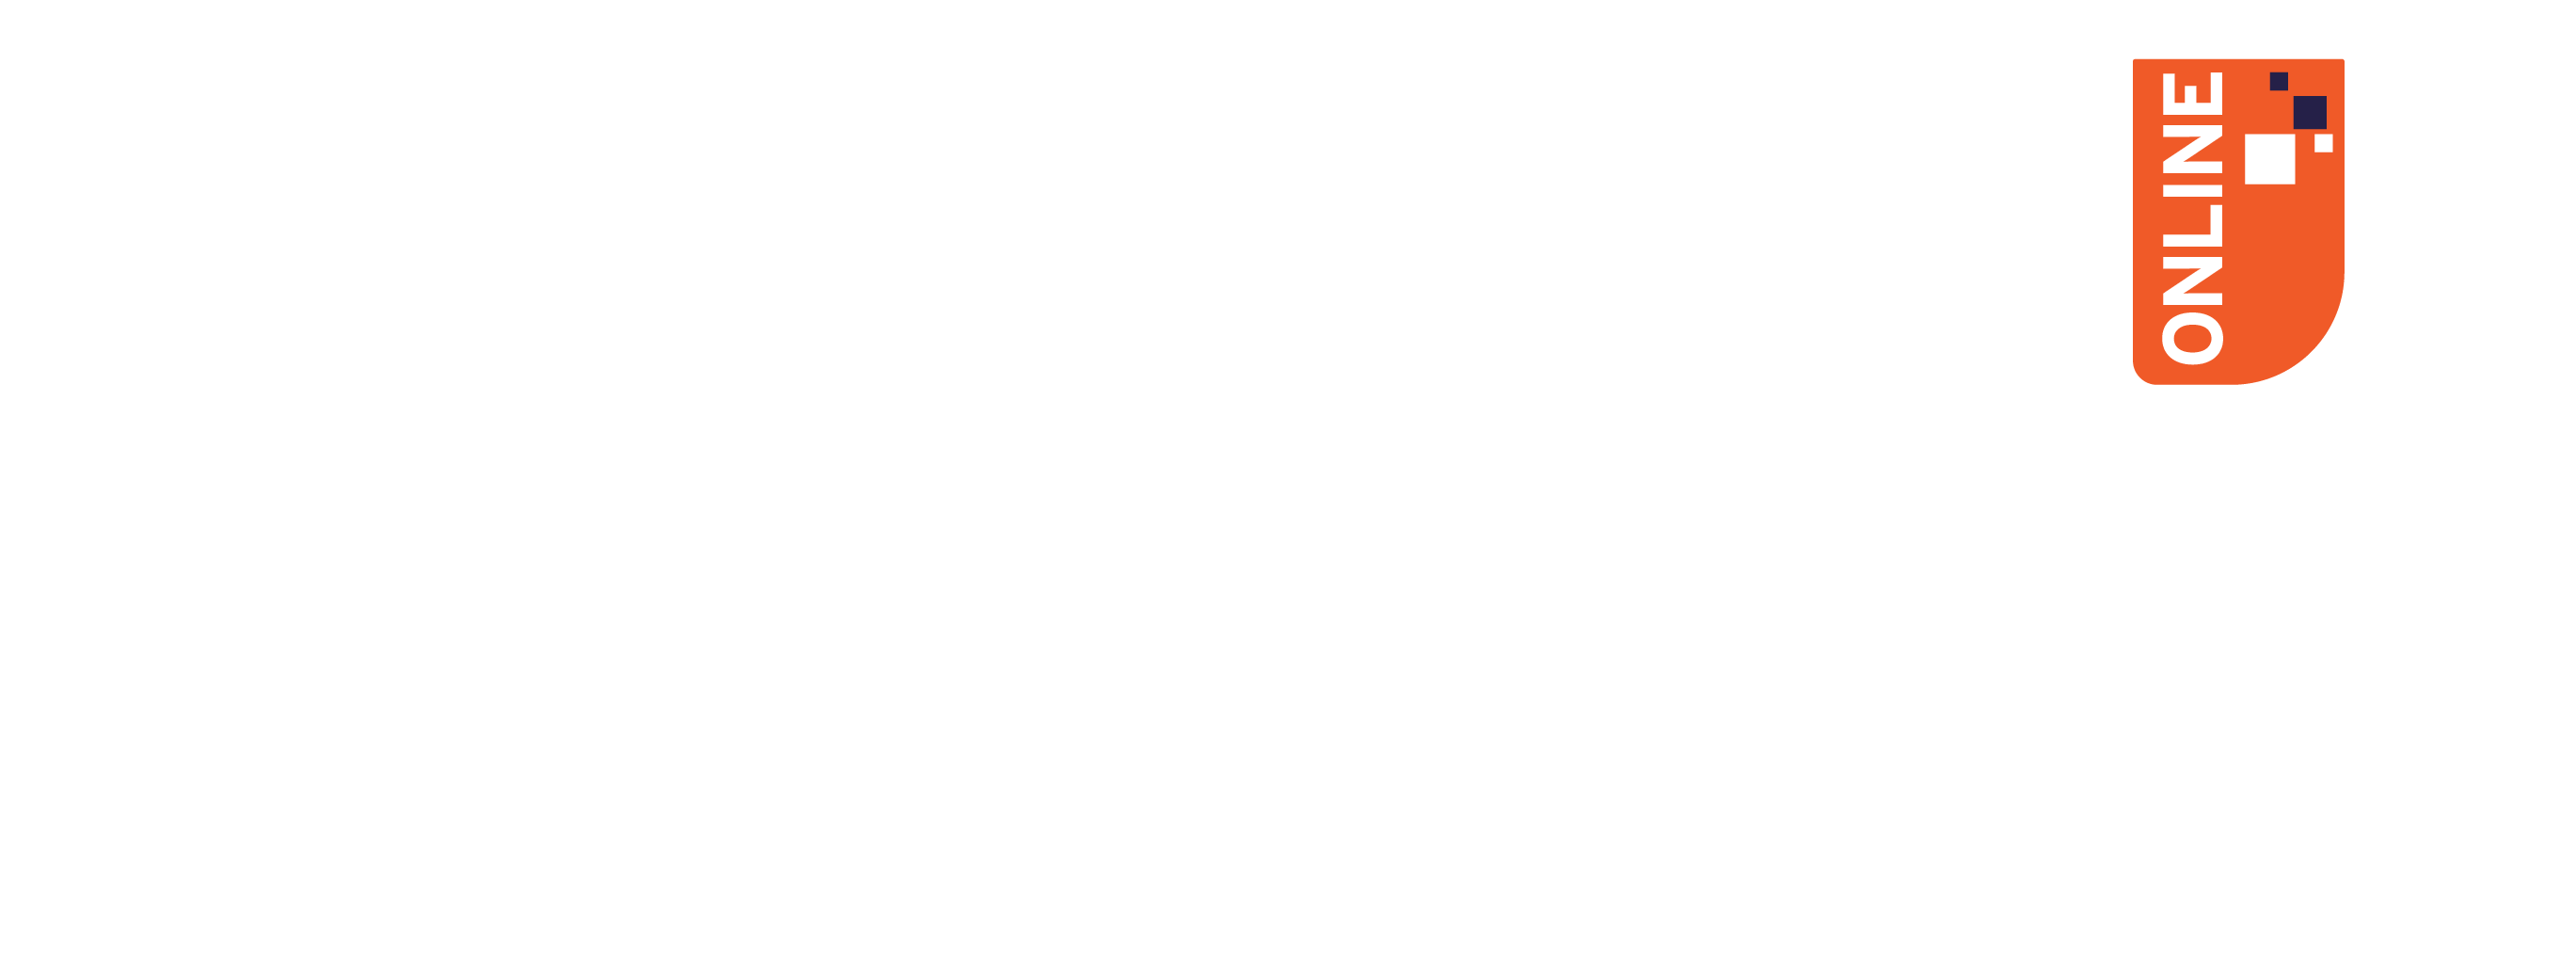 CHRO Series 2021